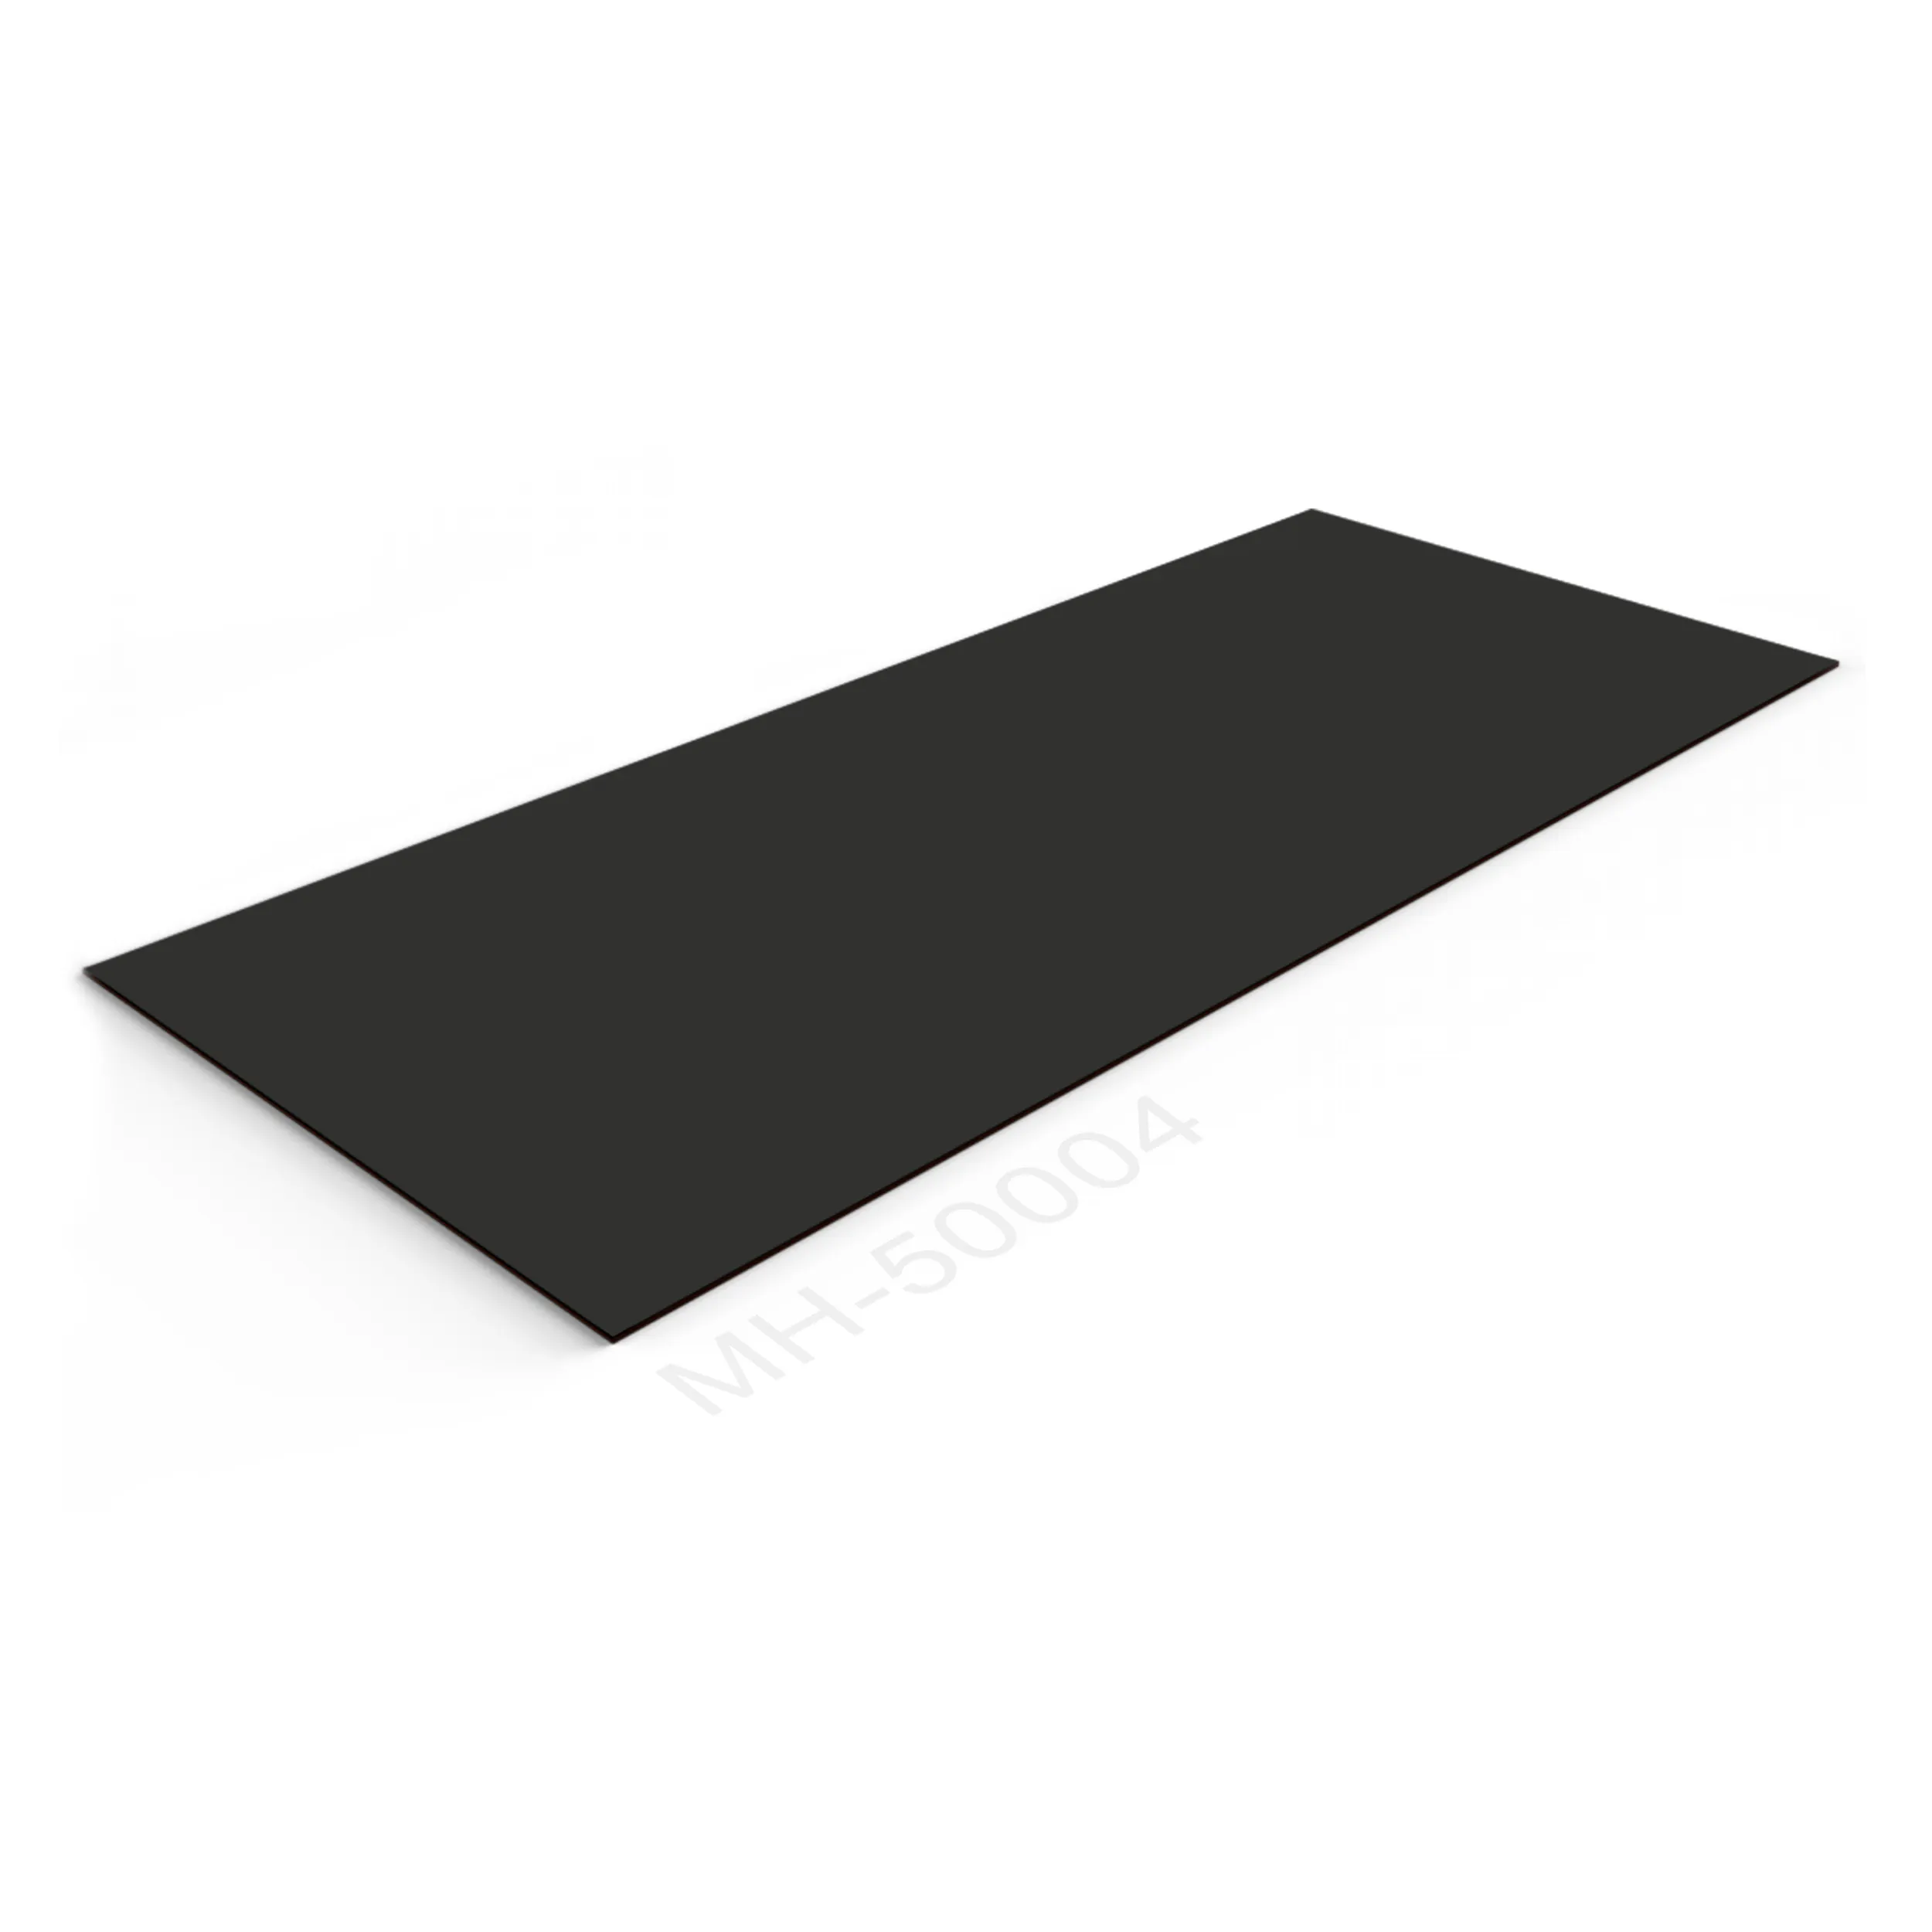 Panel de pared para proyectos, tablero decorativo de alta calidad, Color gris puro, con recubrimiento PETG, WPC